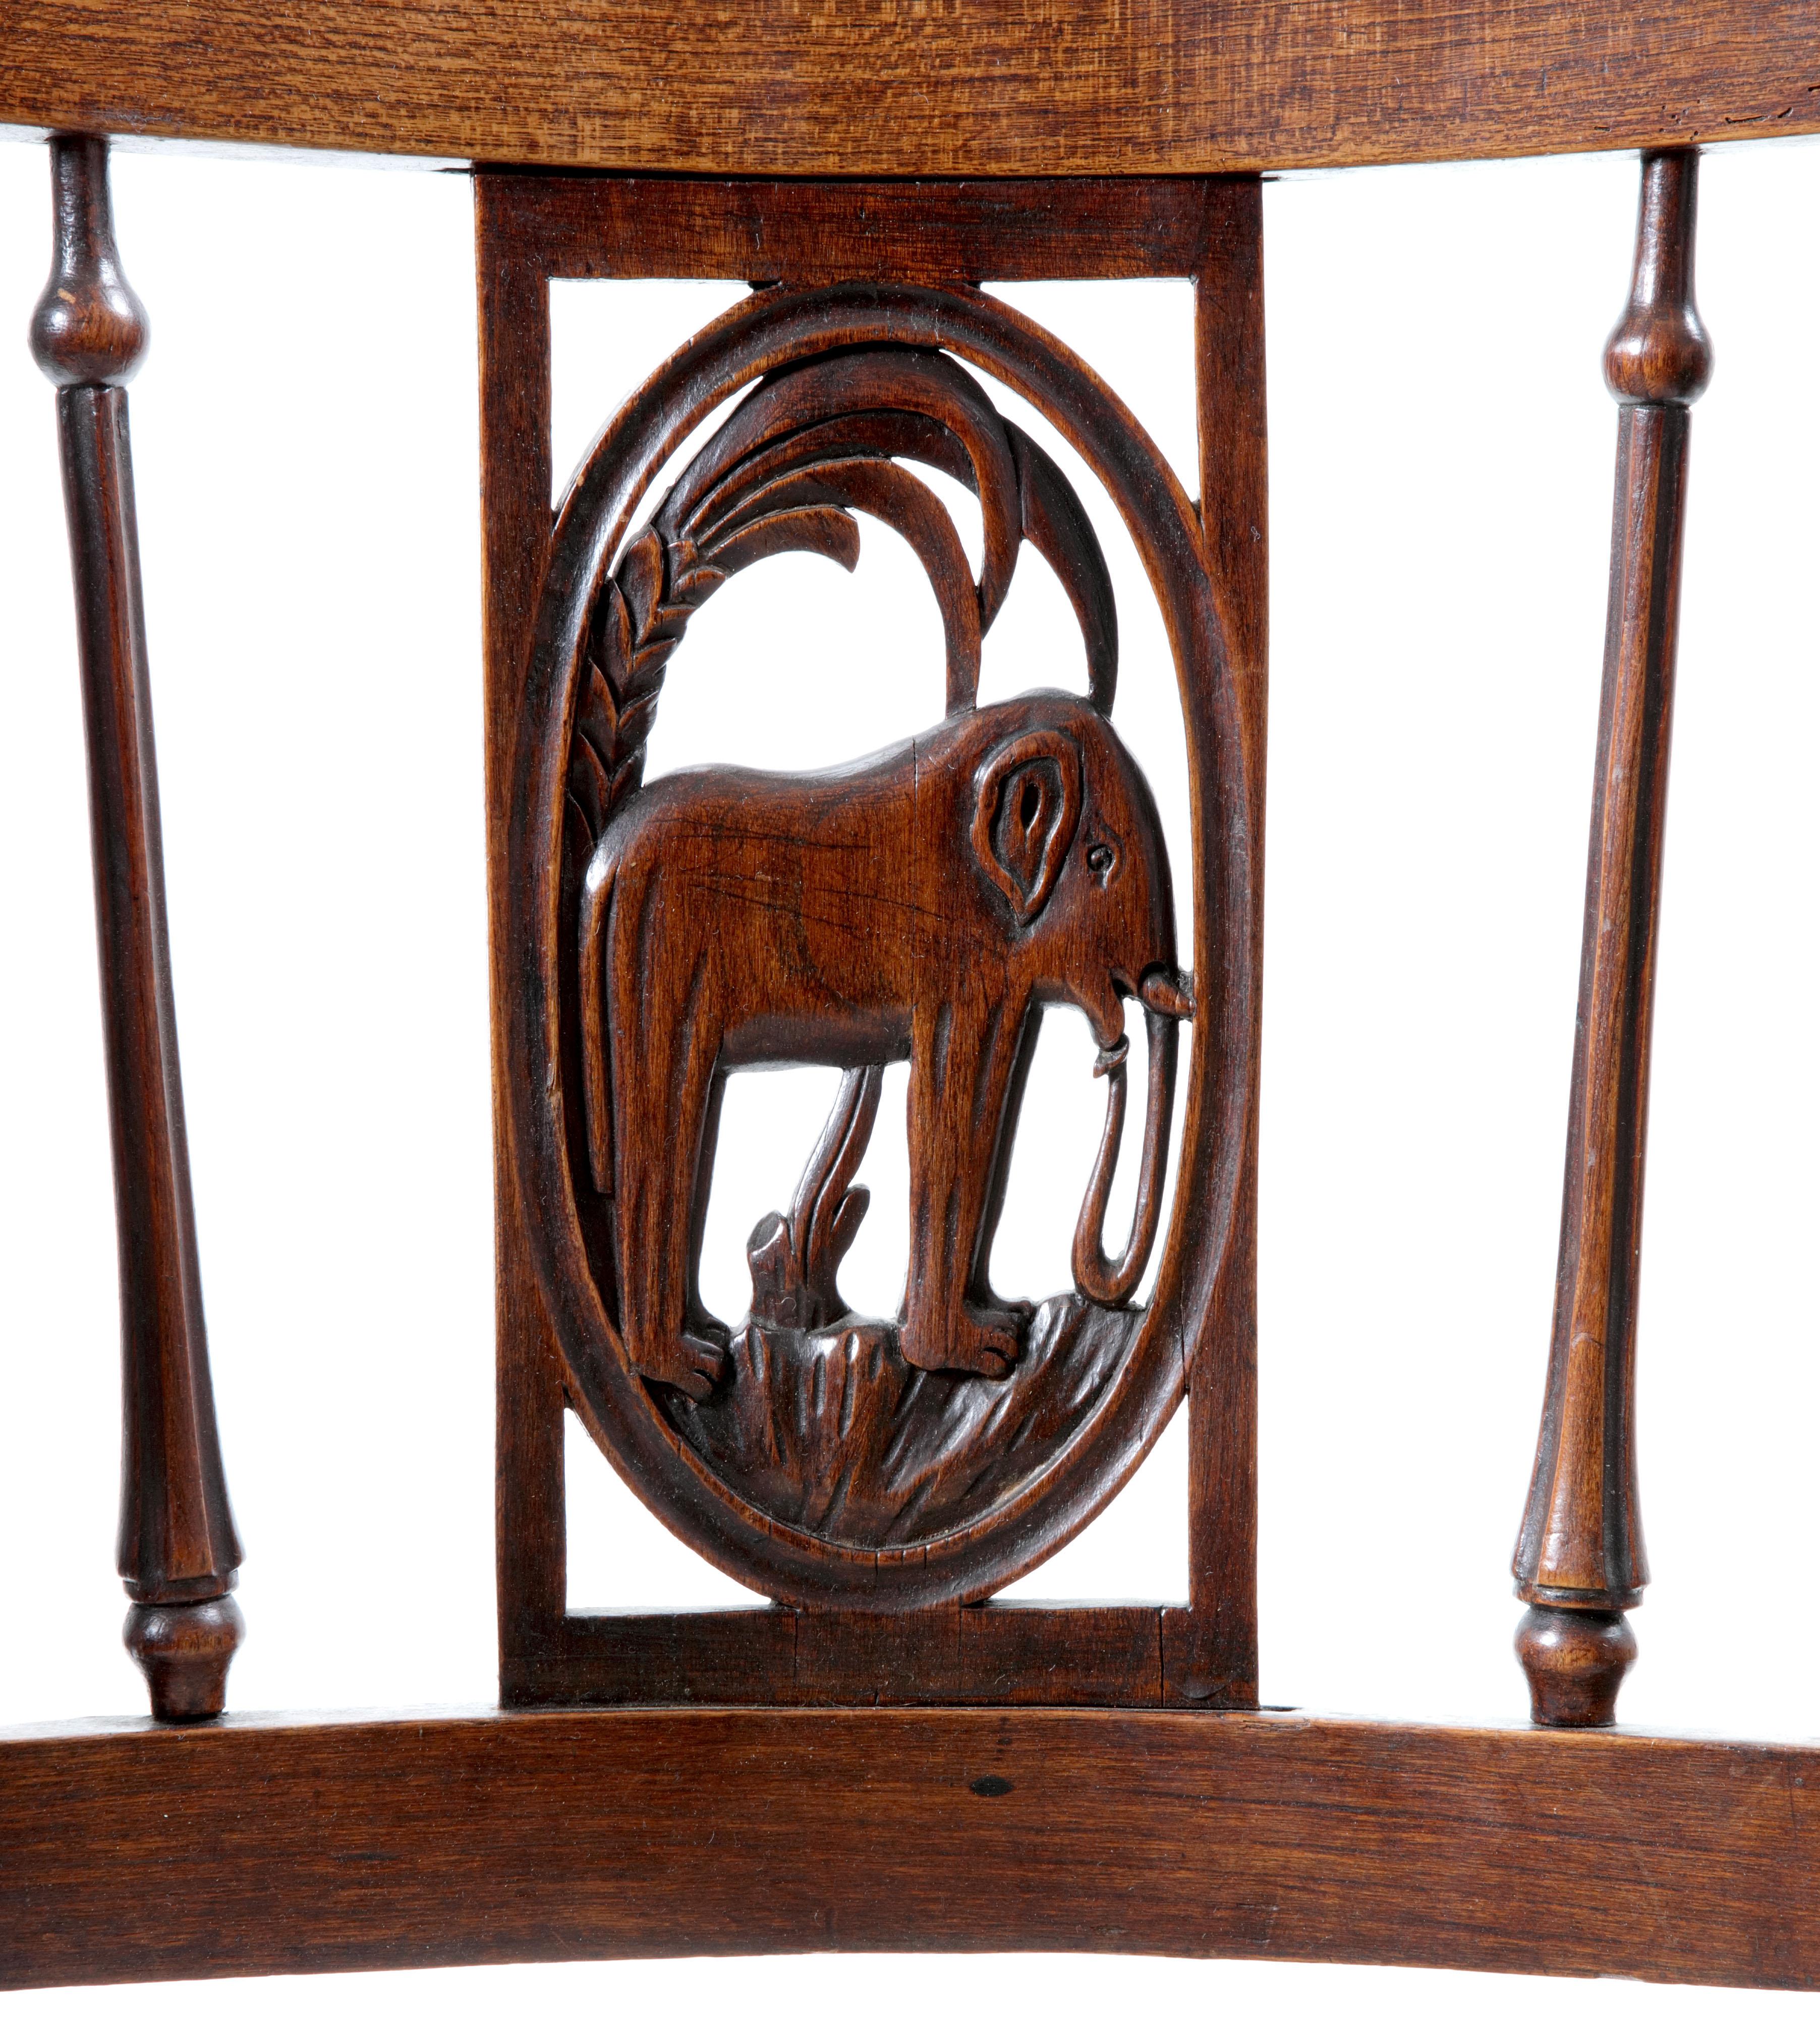 Sechs französische Directoire-Stühle mit figuralen Rückenlehnen, die afrikanische Tiere darstellen

Frankreich, Anfang 19. Jahrhundert


Jeweils aus Ulmen- und Birnbaumholz, mit späterer Polsterung, jeweils mit einer Rückenlehne, auf der ein